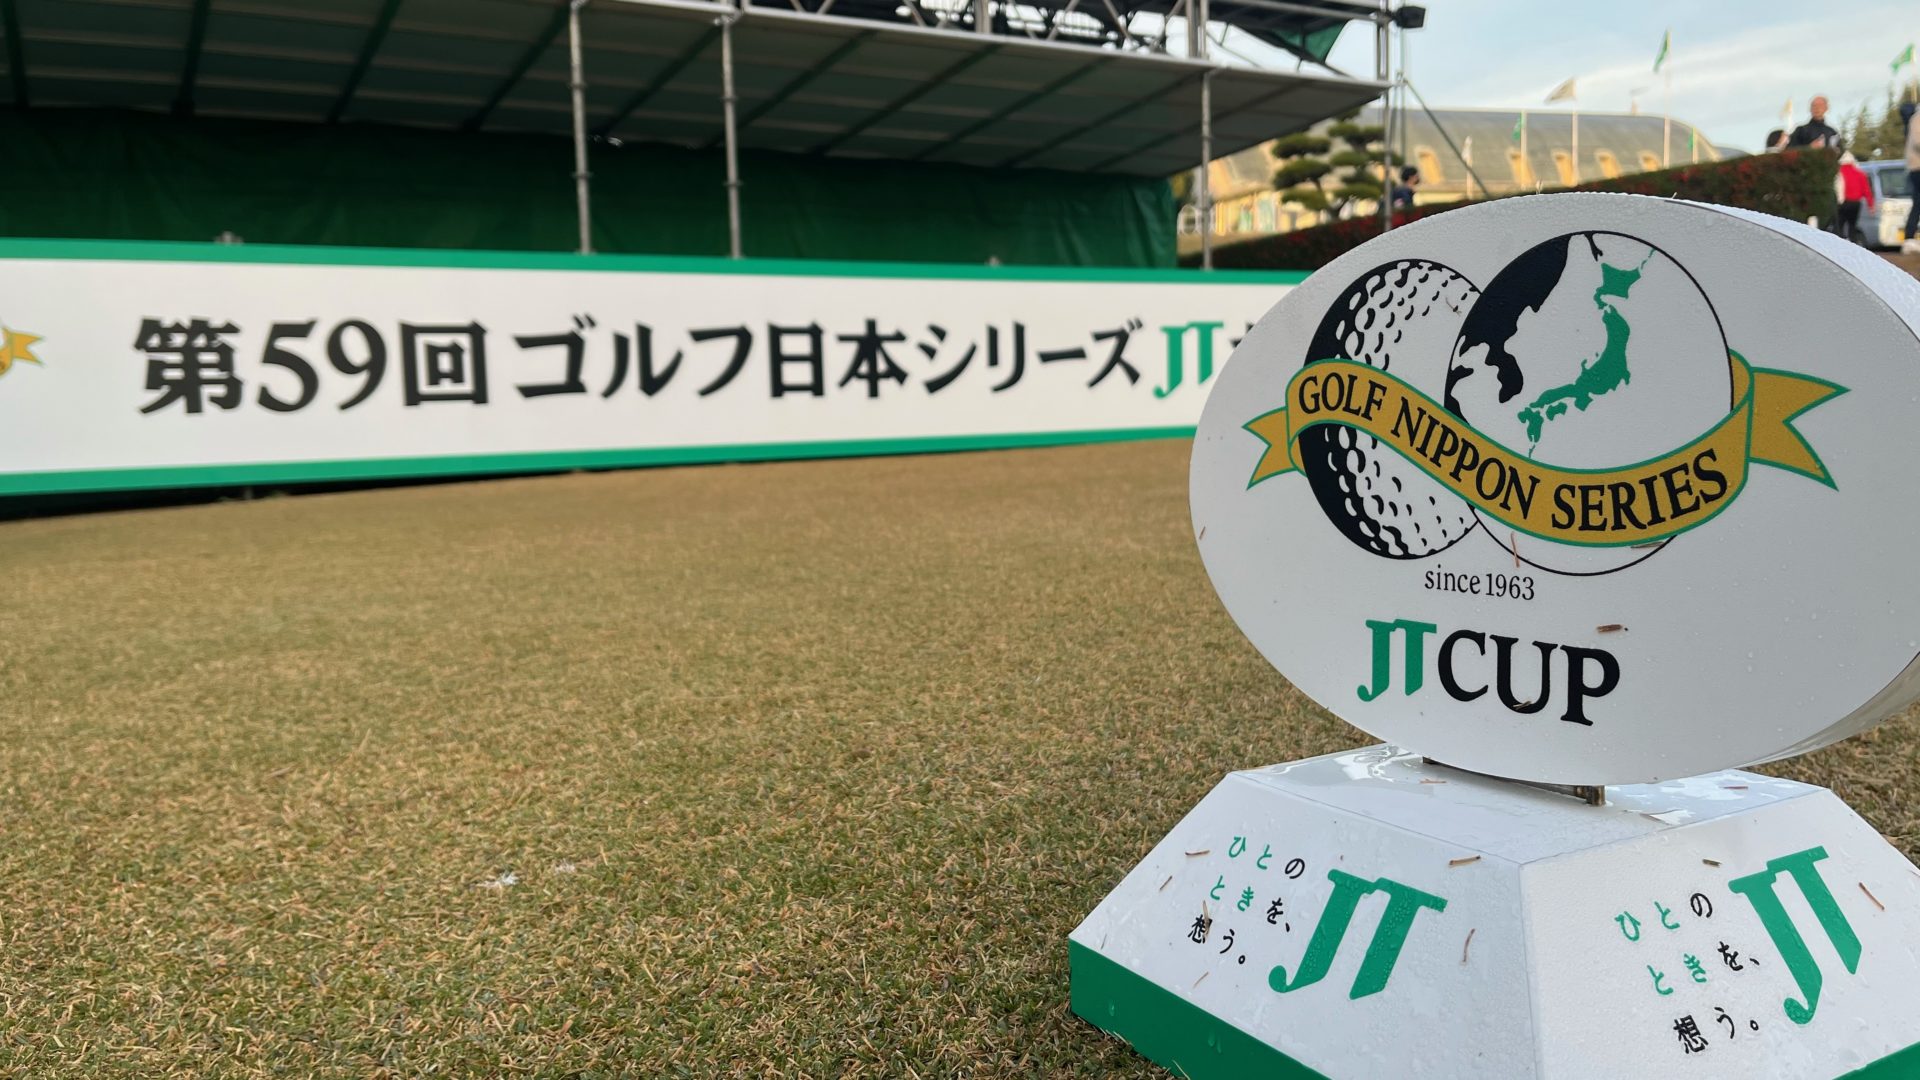 ゴルフ日本シリーズJTカップ【競技運営・ボランティア本部補助業務】